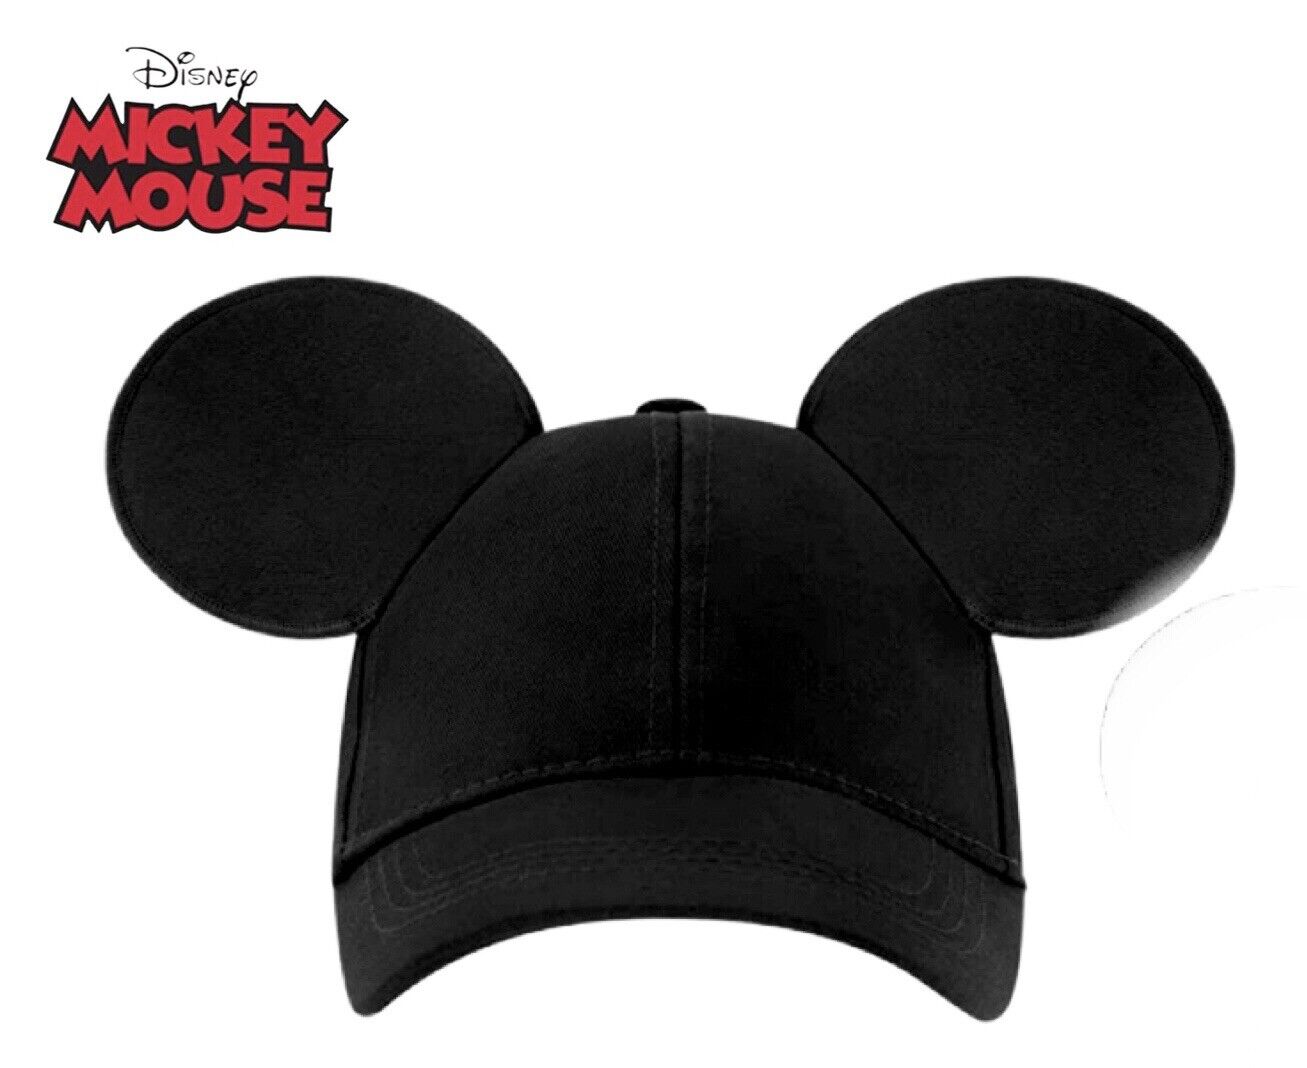 Men's Disney Mickey Hat w/Ears Black Classic Baseball Cap w/ Ears Adult New